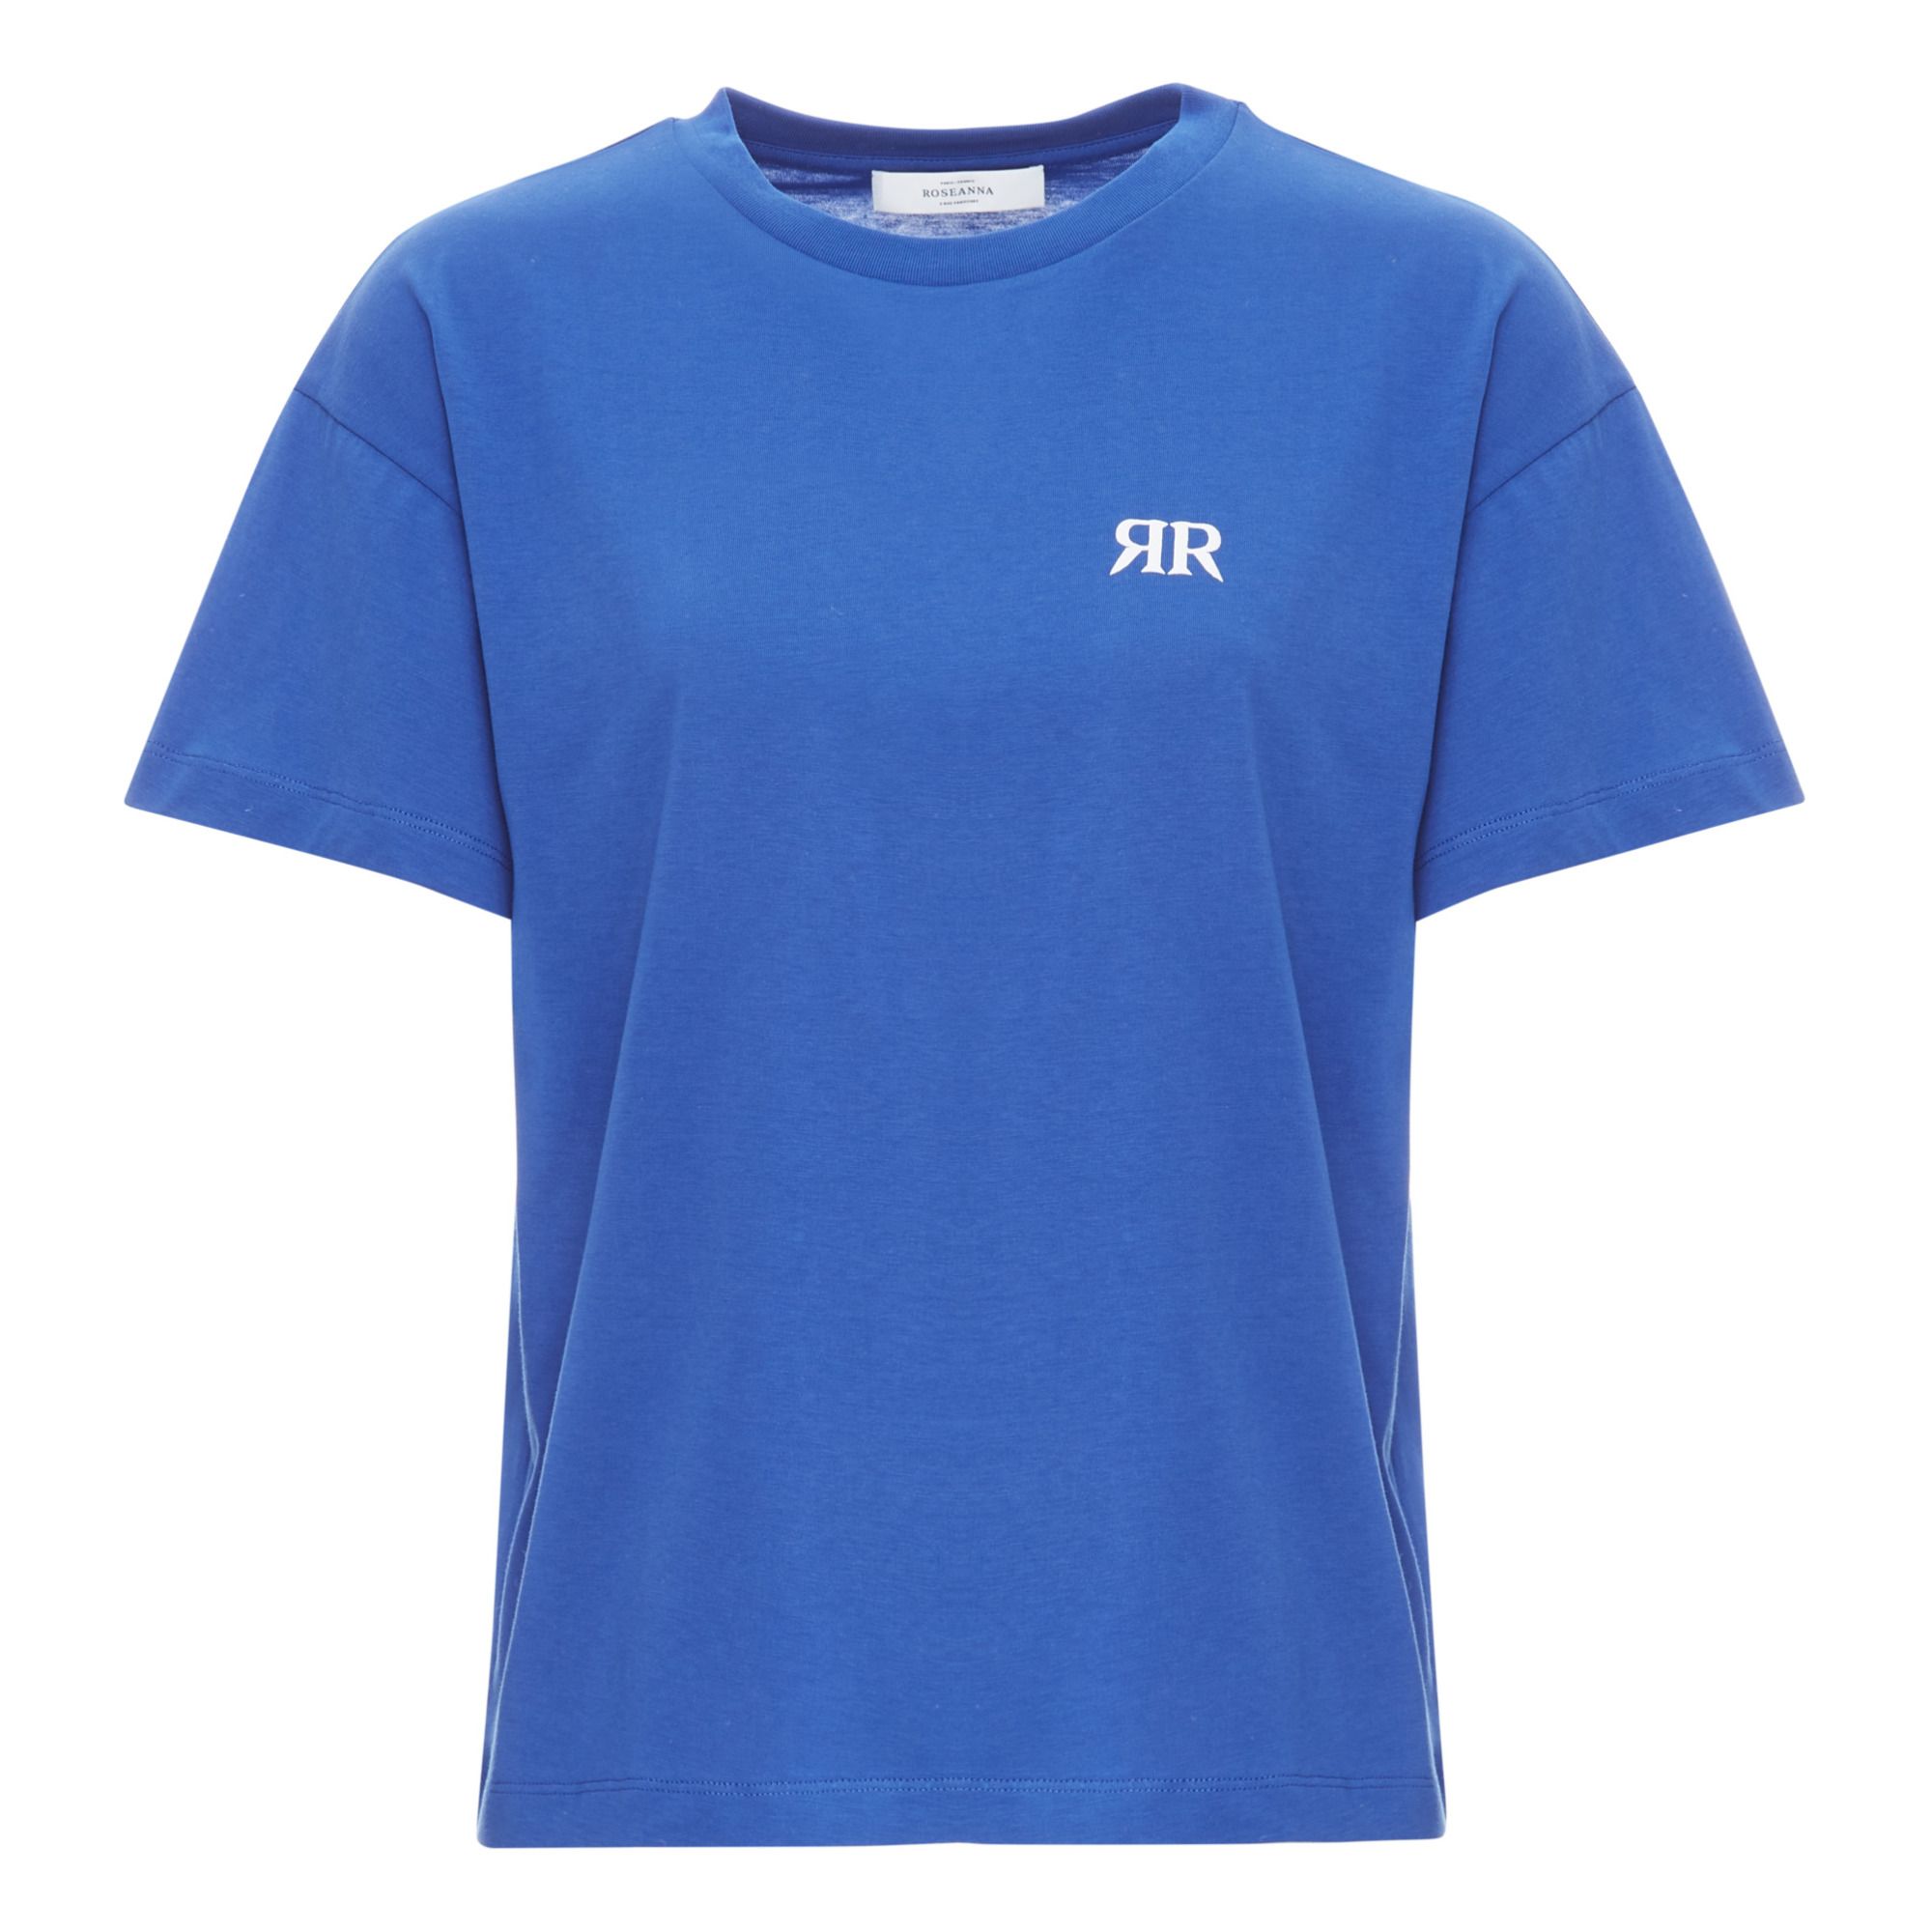 Roseanna - T-shirt Never RR Coton Bio - Femme - Bleu